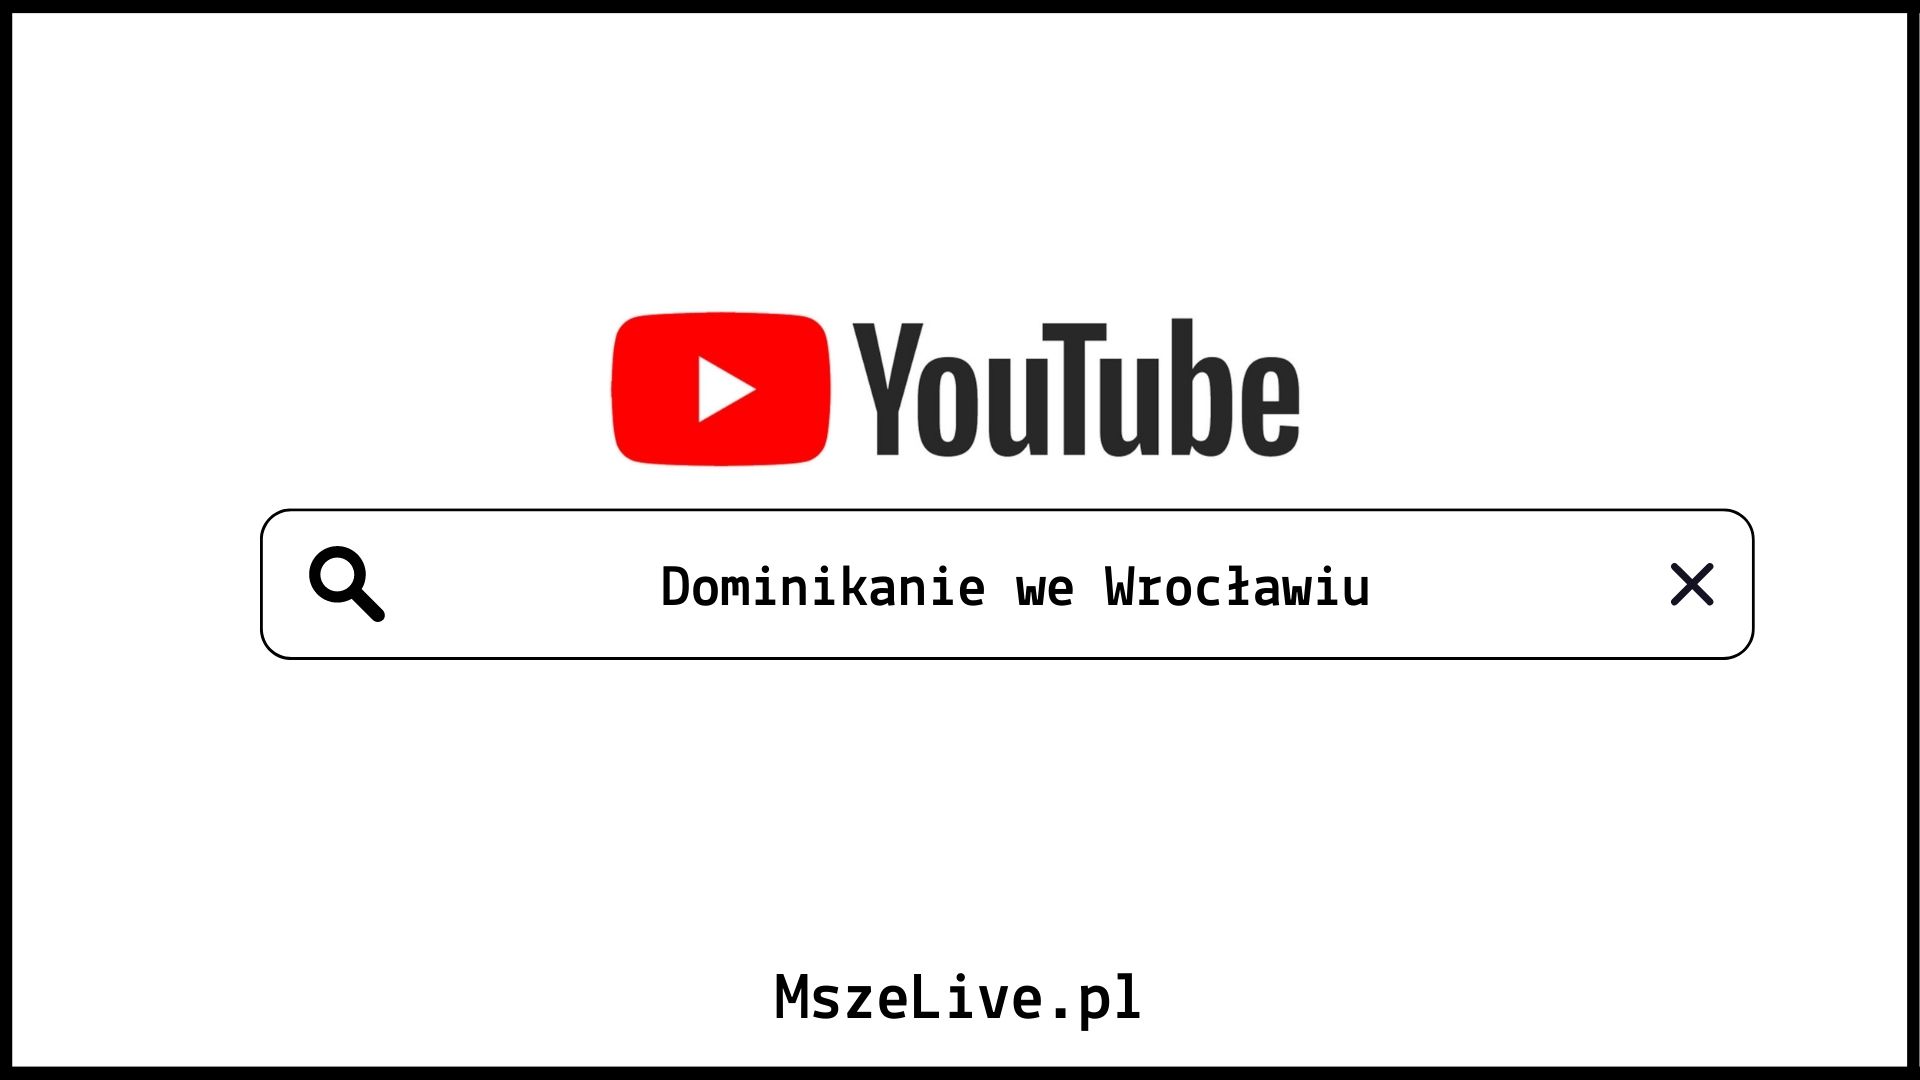 Youtube Dominikanie we Wrocławiu